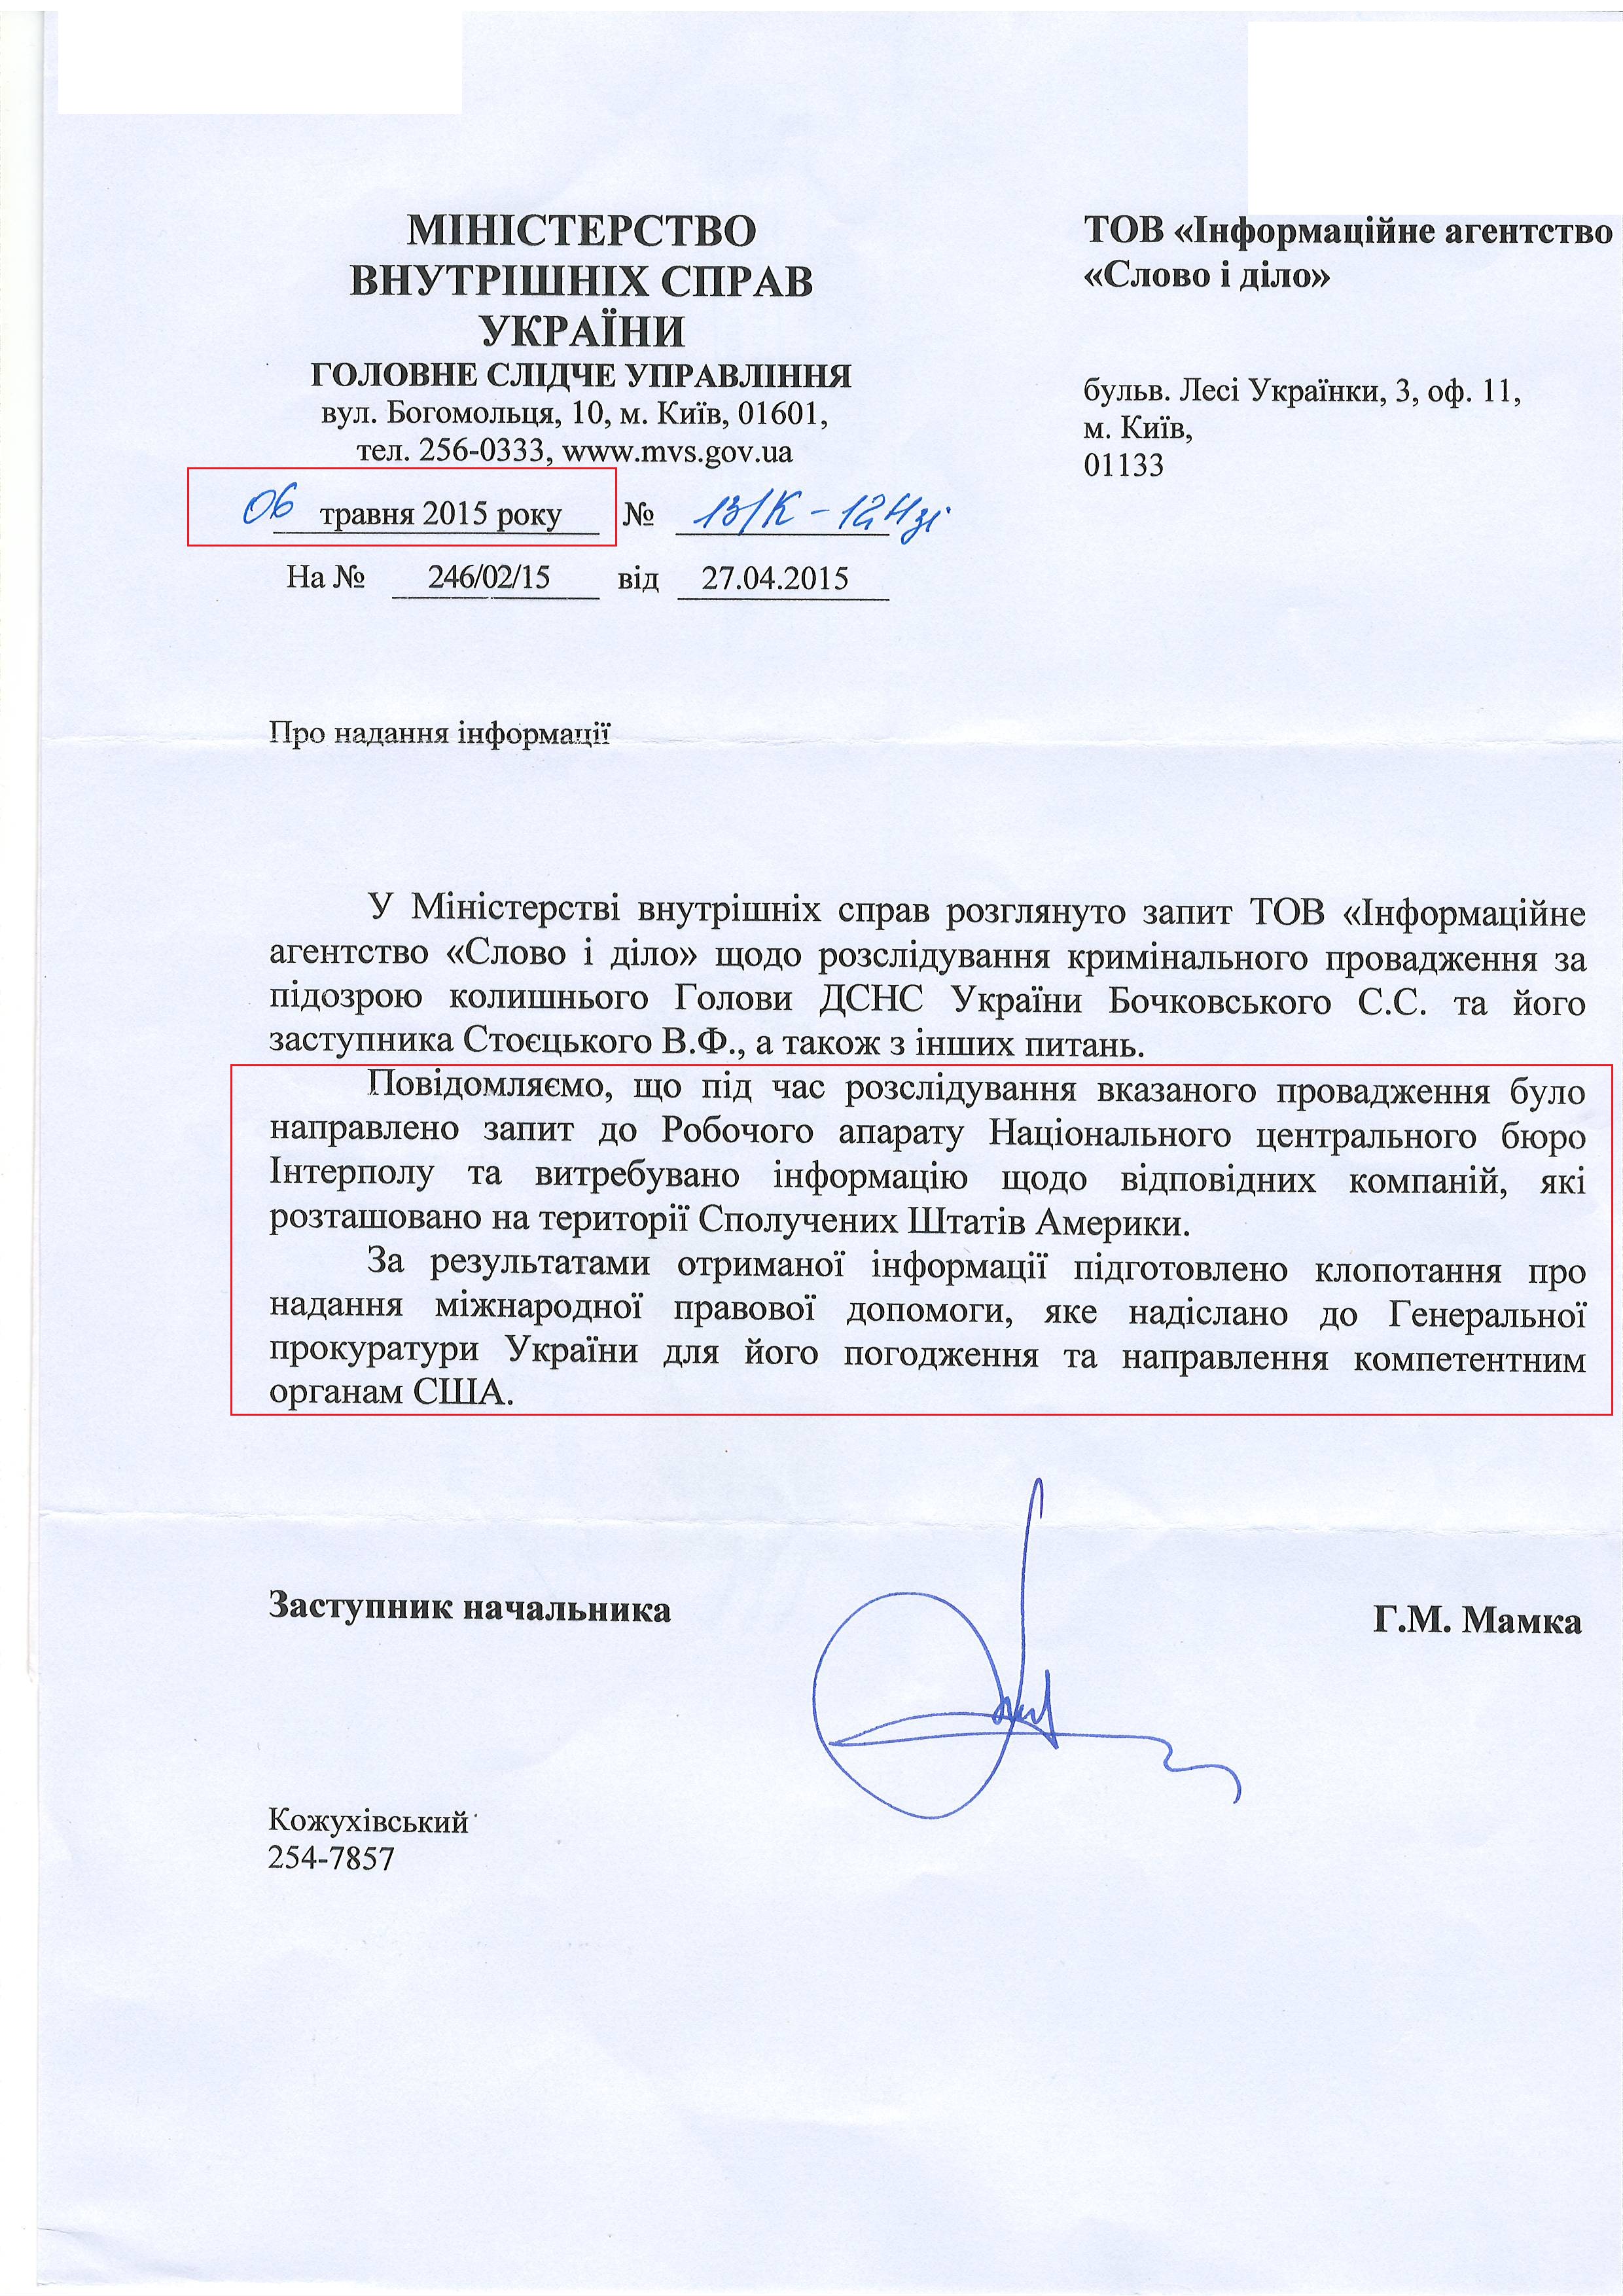 лист міністерства внутрішніх справ України від 6 травня 2015 року